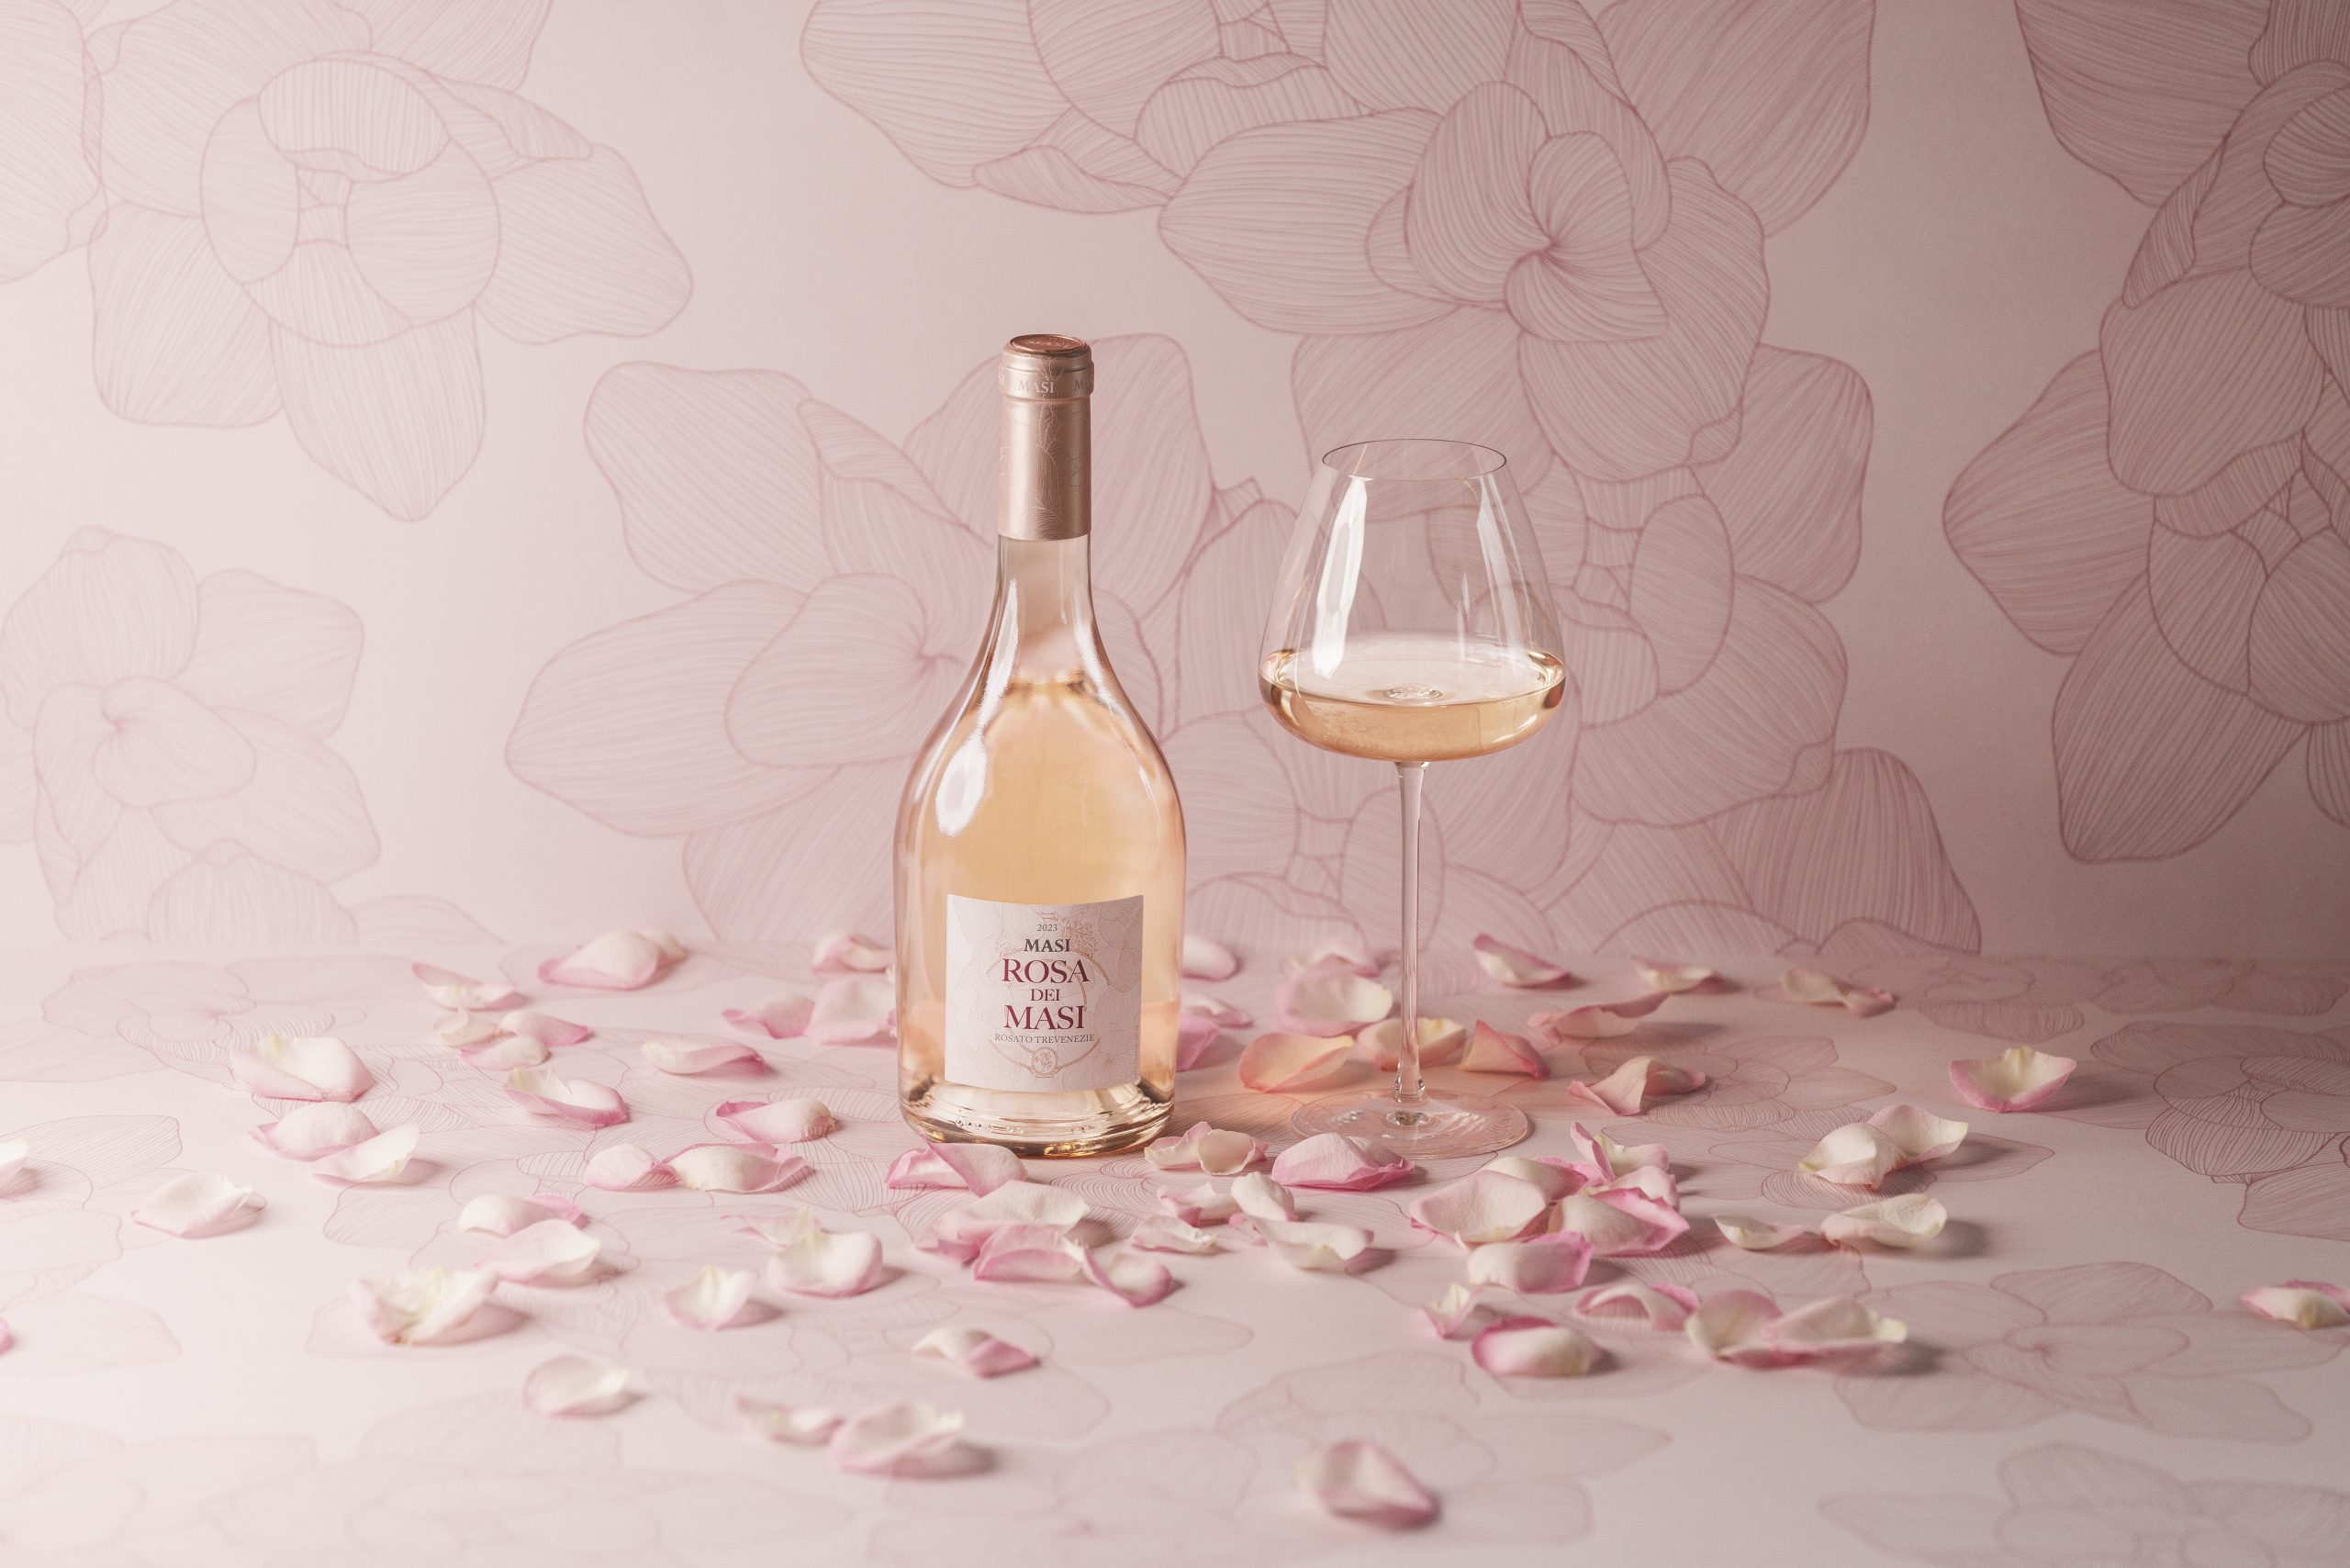 Una bottiglia del nuovo Rosa dei Masi si trova accanto a un bicchiere di vino. I petali di rosa sono sparsi in giro e il fondale rosa pallido presenta gli stessi motivi di rosa disegnati a inchiostro della bottiglia.